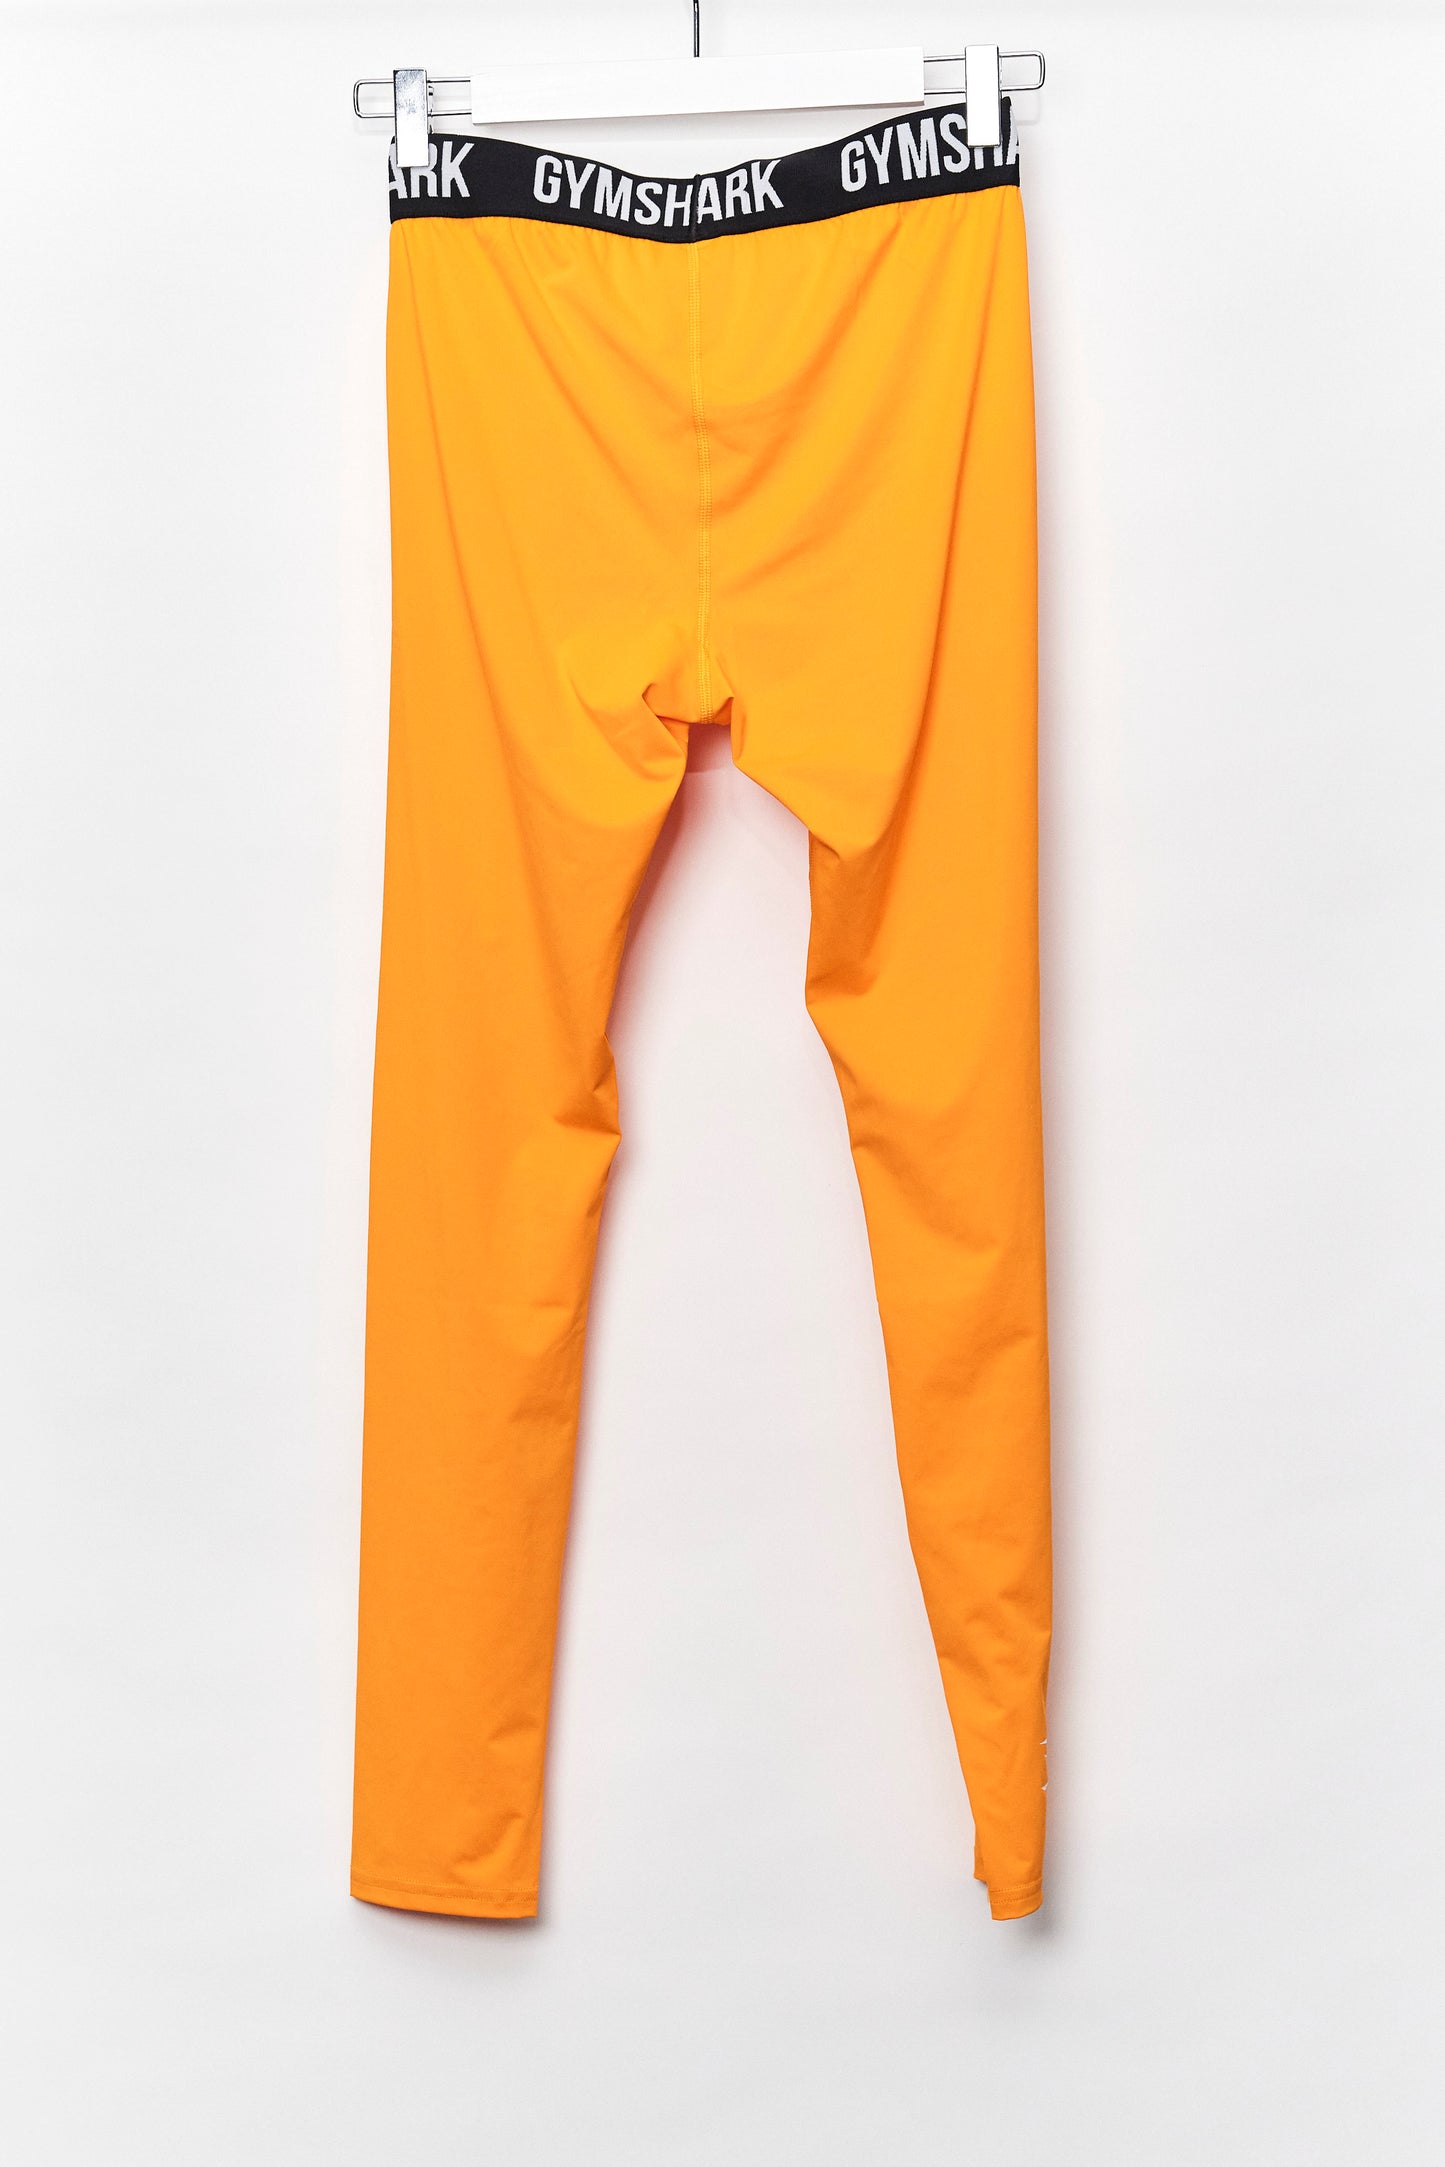 Womens Gymshark Orange Leggings size Medium